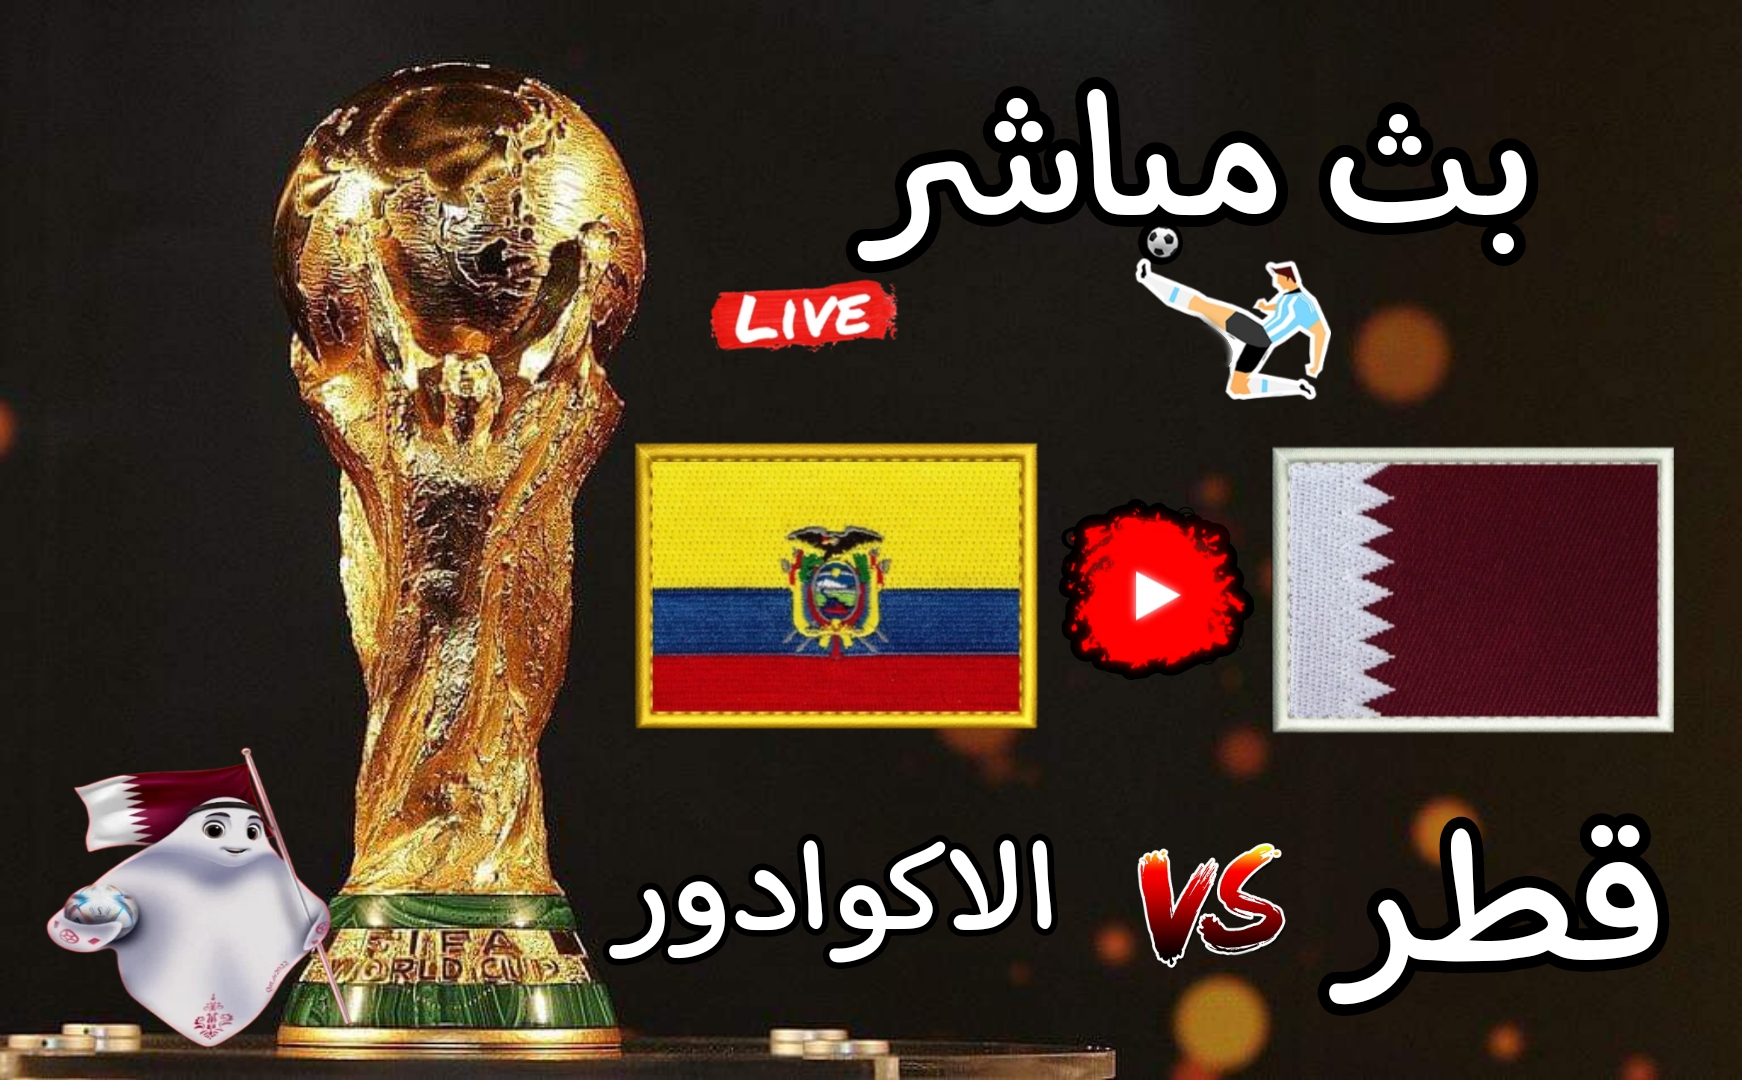 مشاهدة مباراة قطر والاكوادور بث مباشر بدون تقطيع